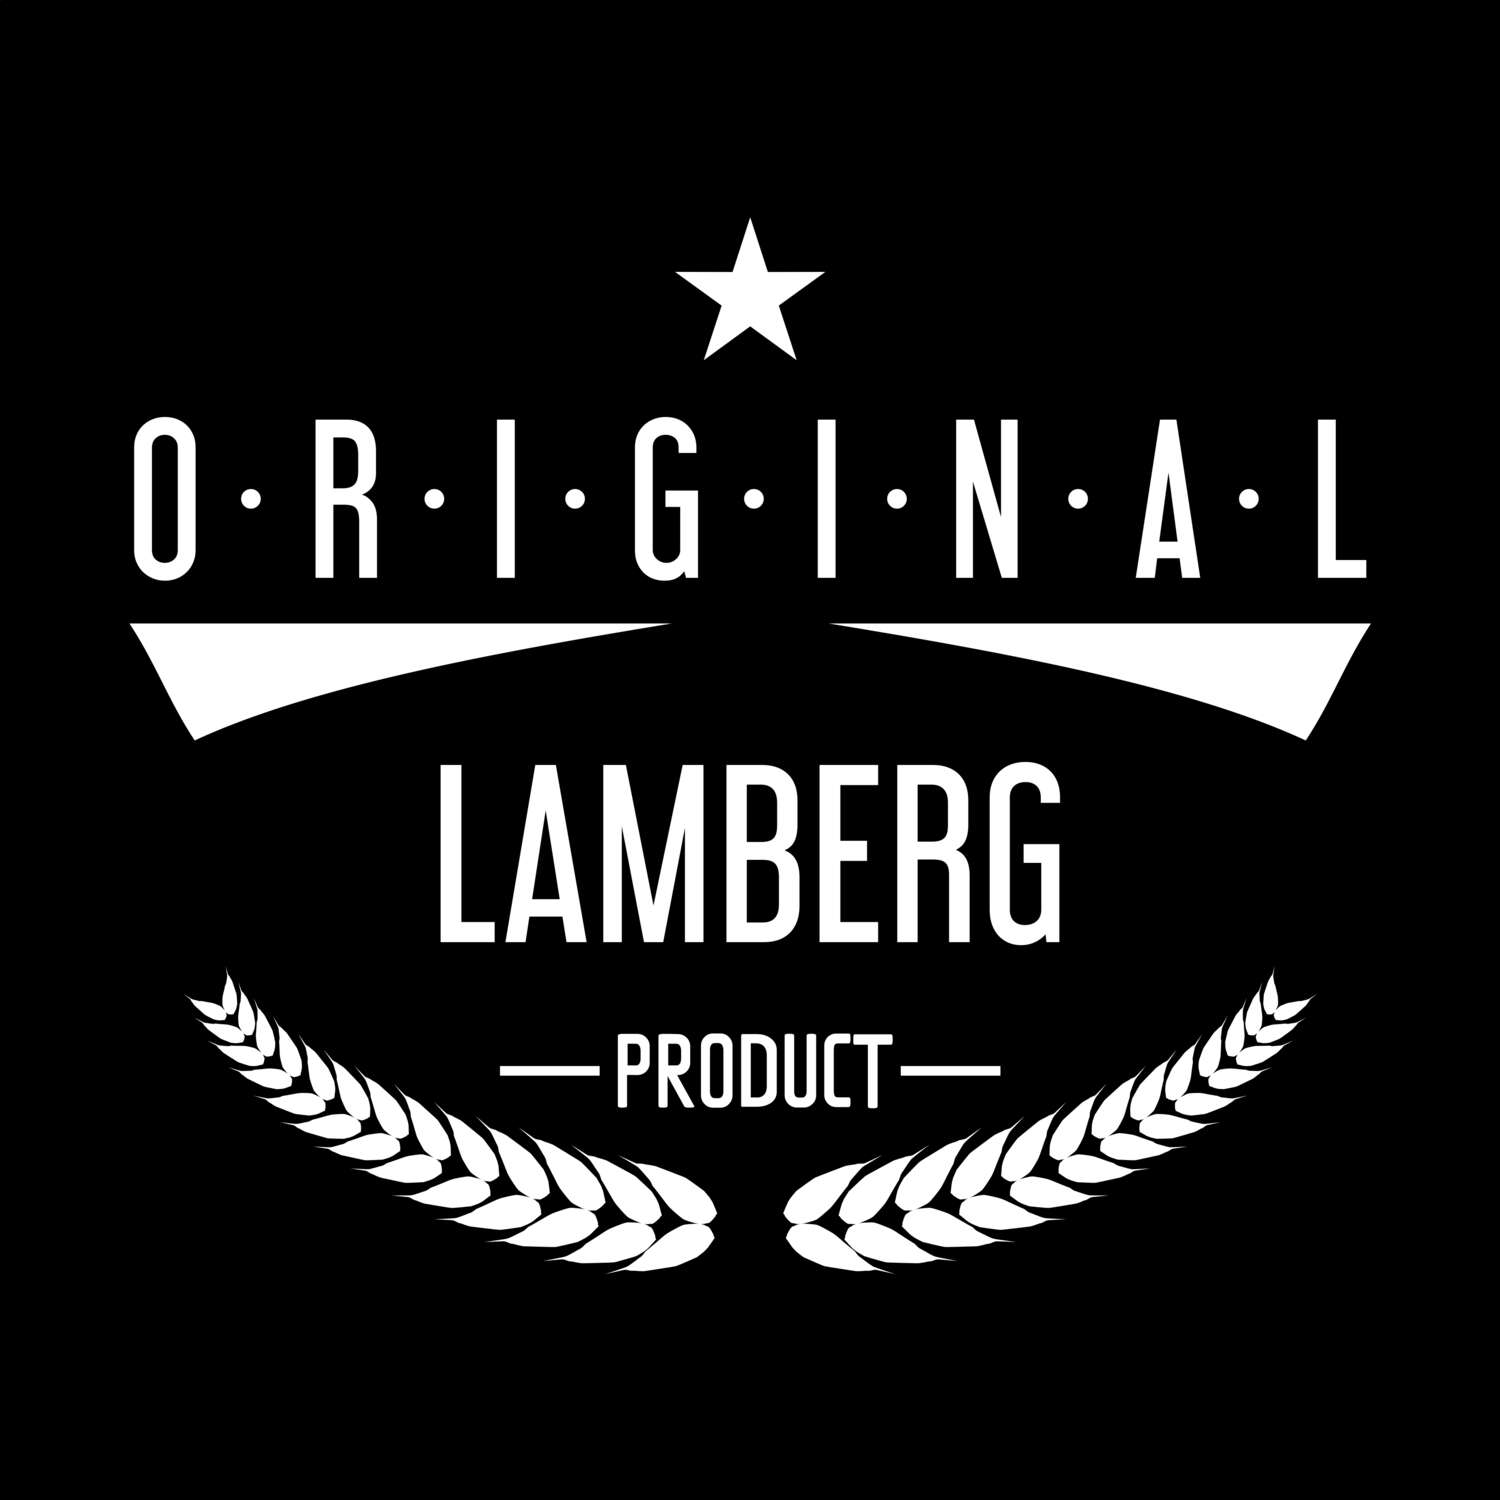 Lamberg T-Shirt »Original Product«